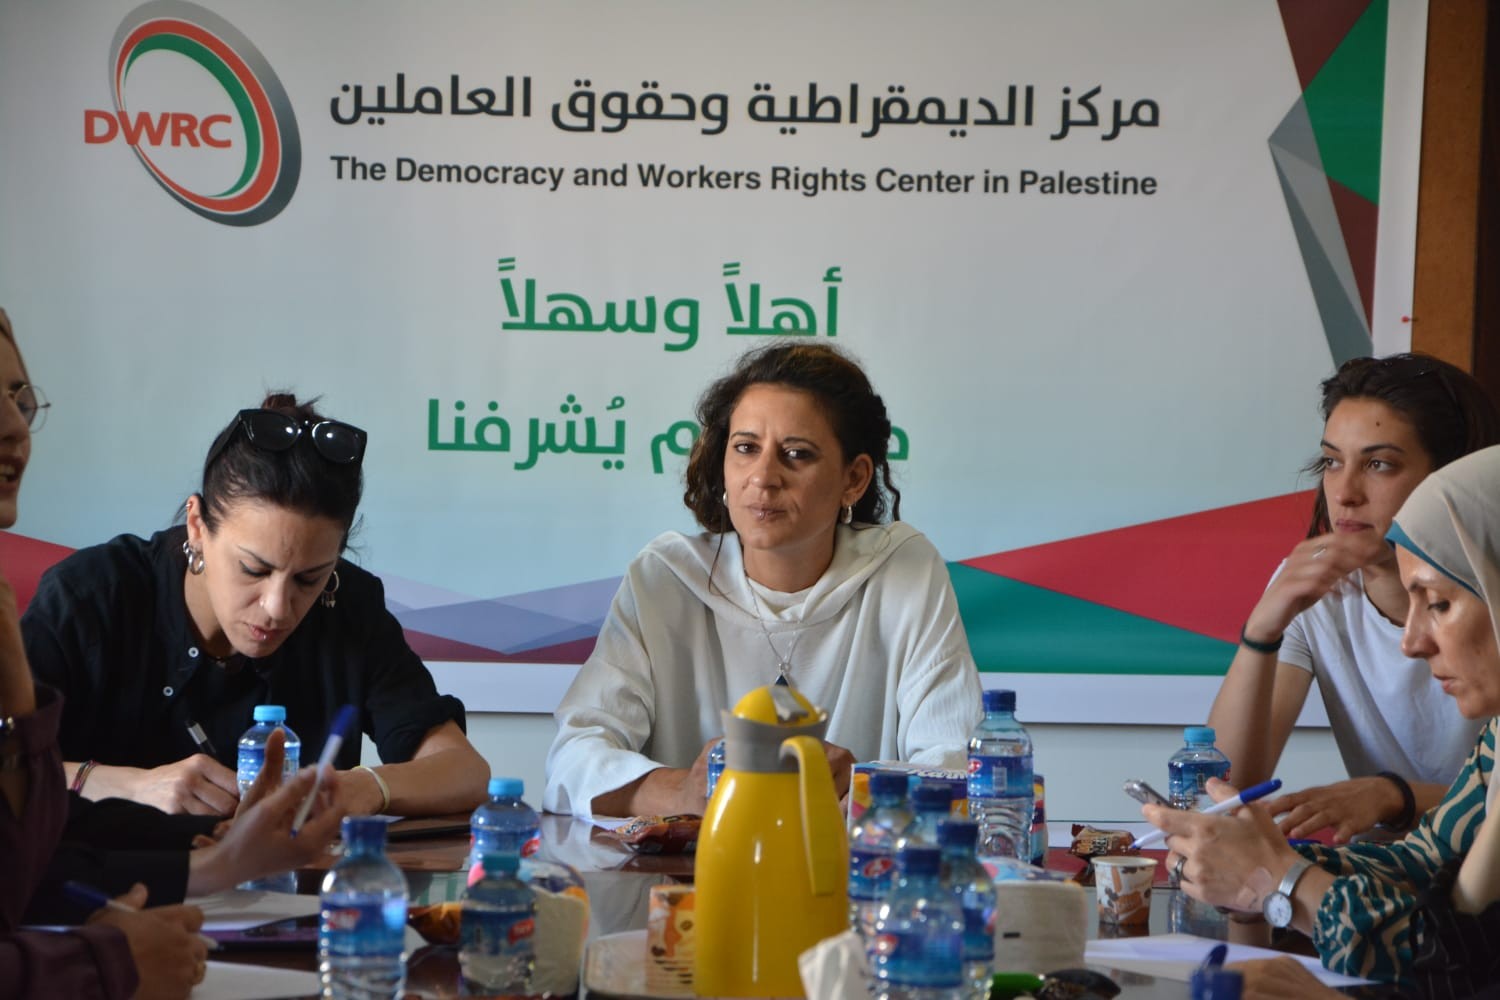 اختتام أعمال مؤتمر المرأة  بين غزة وإيطاليا في قطاع غزة بمشاركة الوفد الإيطالي النسوي.jpg